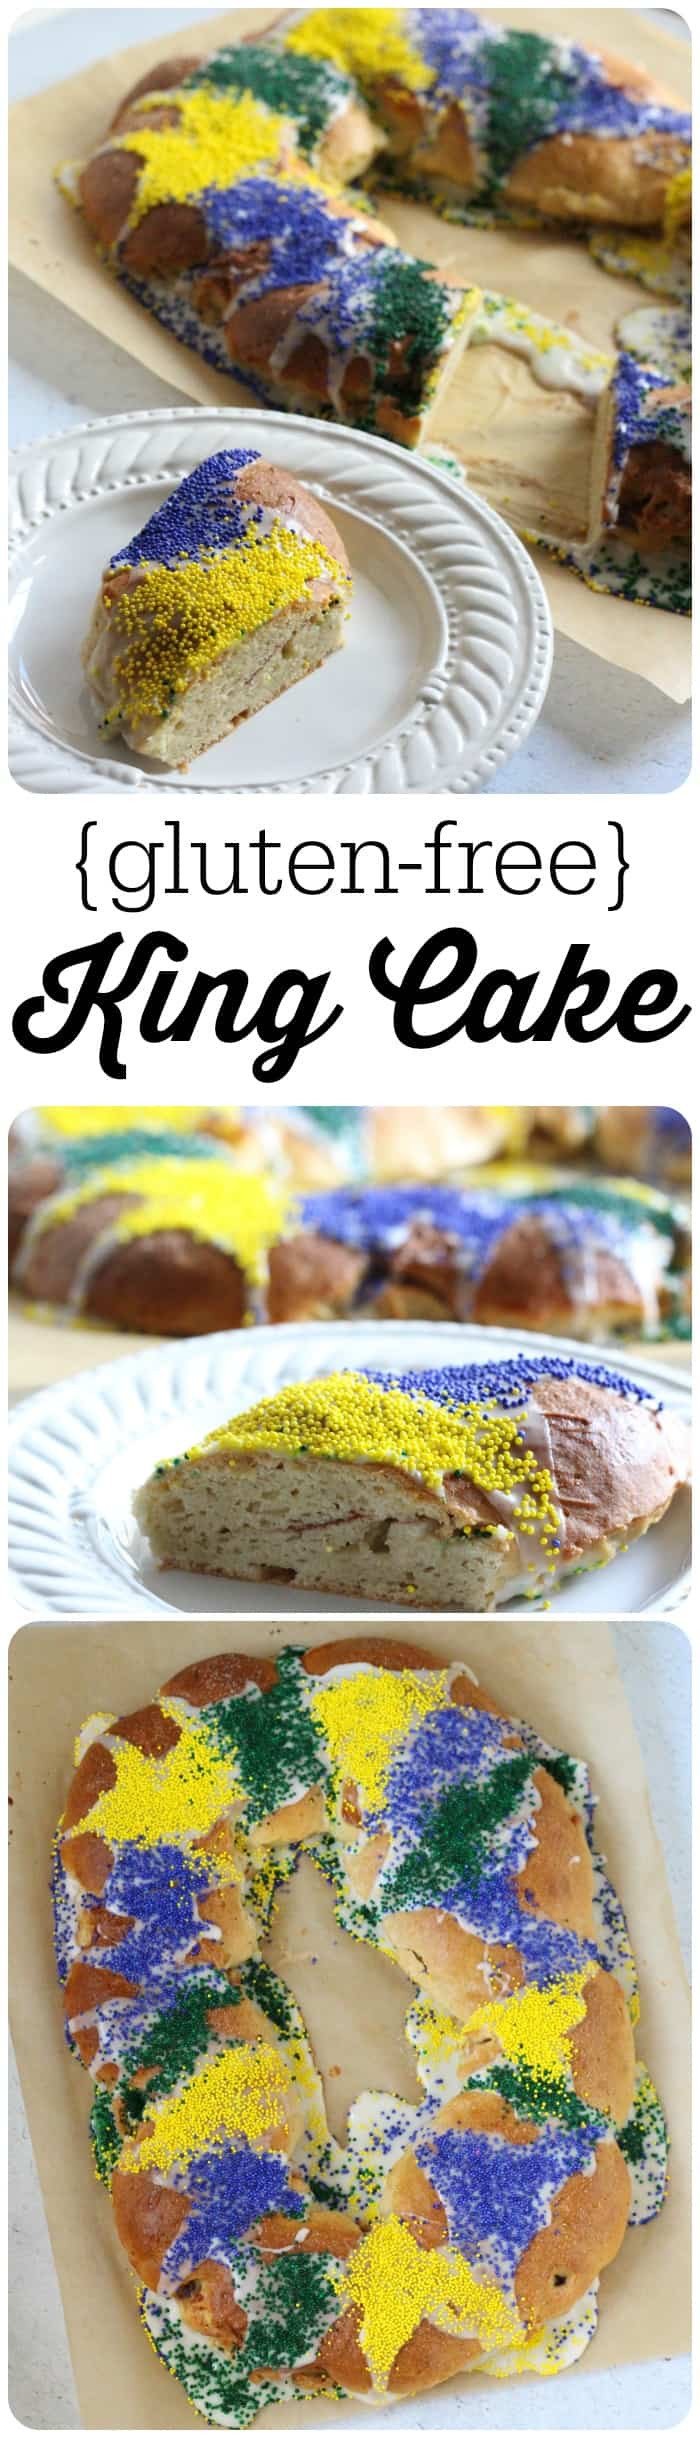 Gluten Free King Cake Recipe
 Gluten Free King Cake Recipe